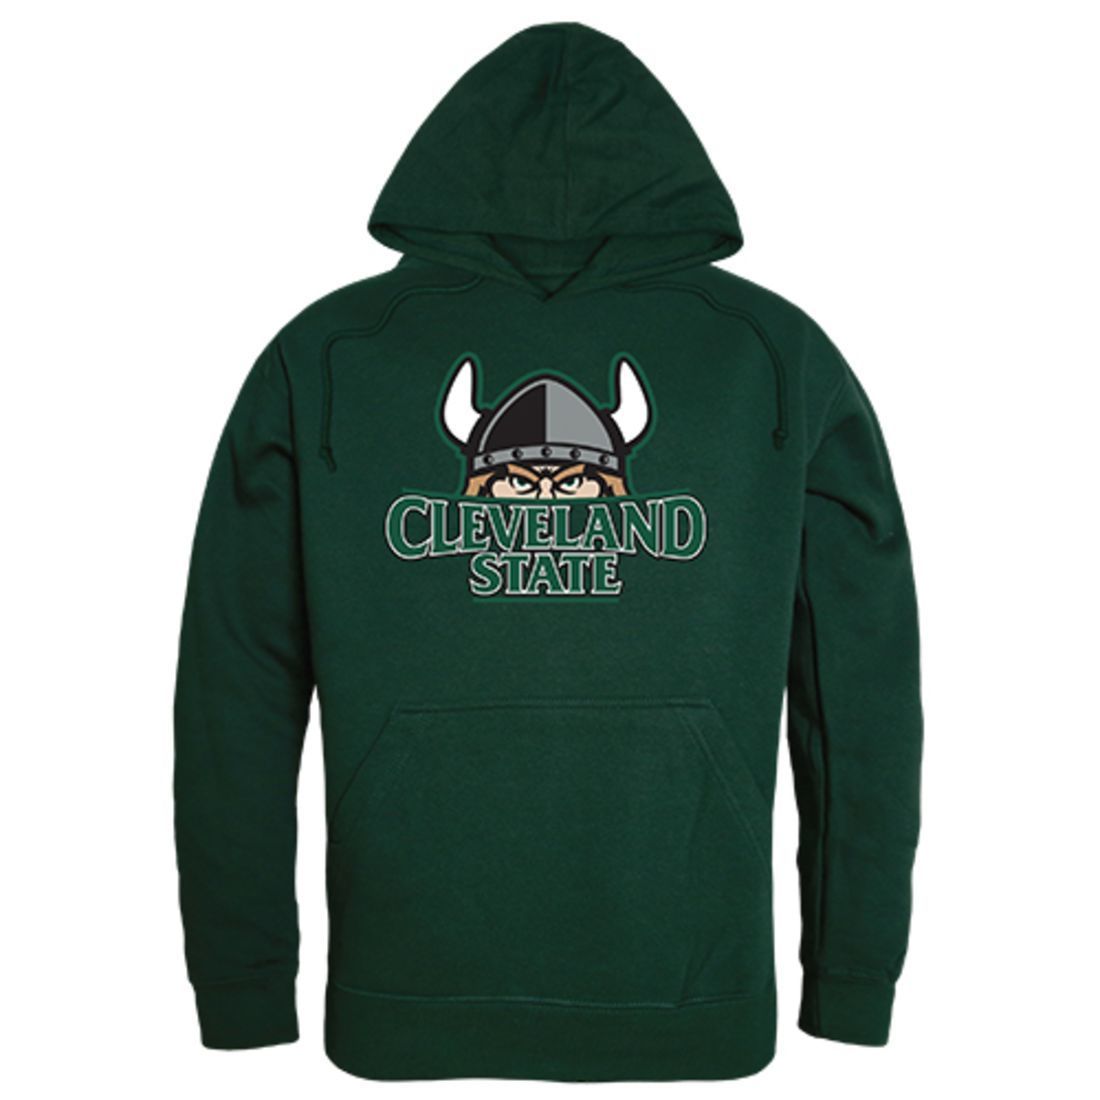 CSU Cleveland State University Freshman Pullover Sweatshirt Hoodie Forest Green-Campus-Wardrobe